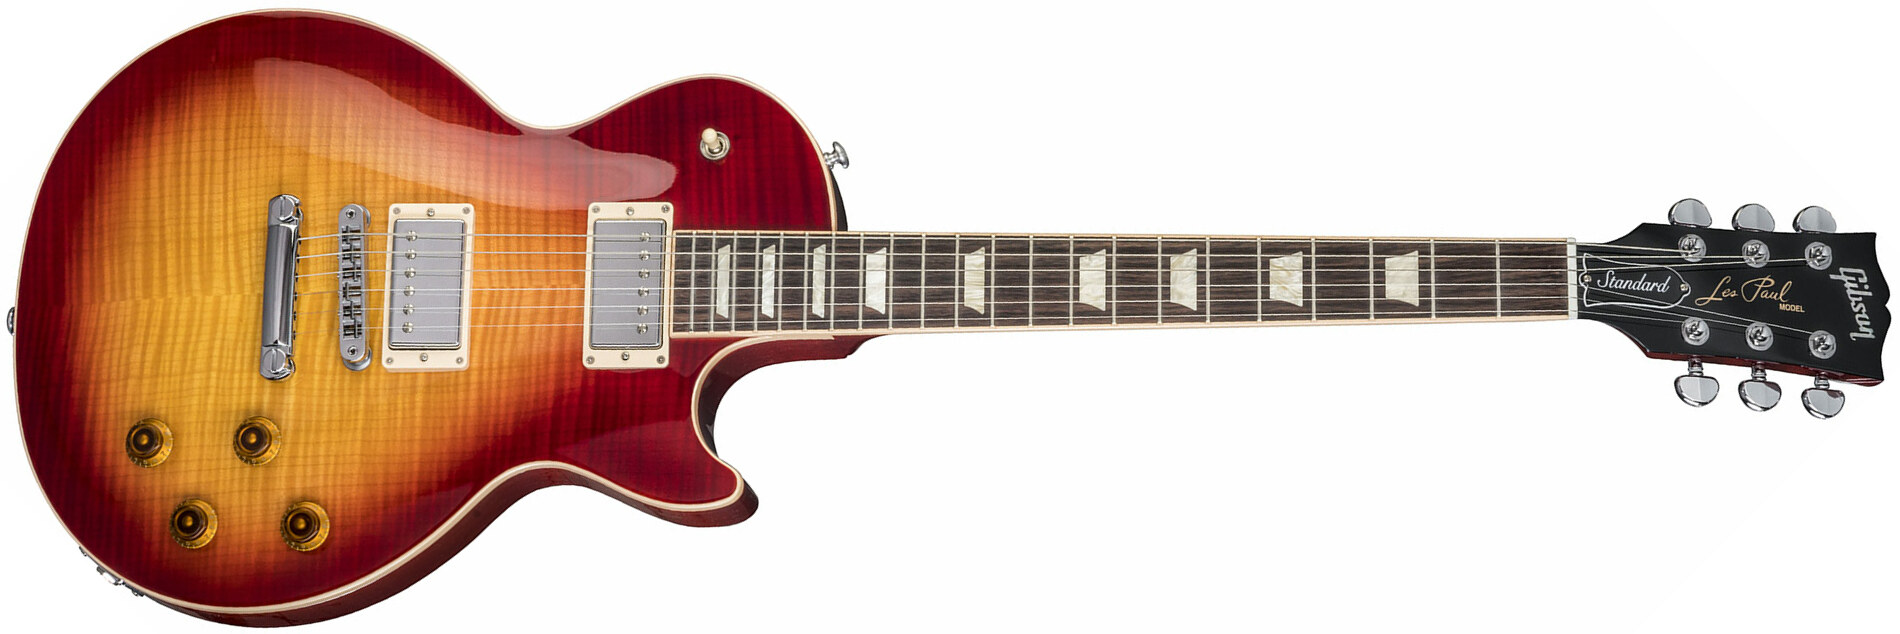 Gibson Les Paul Standard 2018 - Heritage Cherry Sunburst - Enkel gesneden elektrische gitaar - Main picture